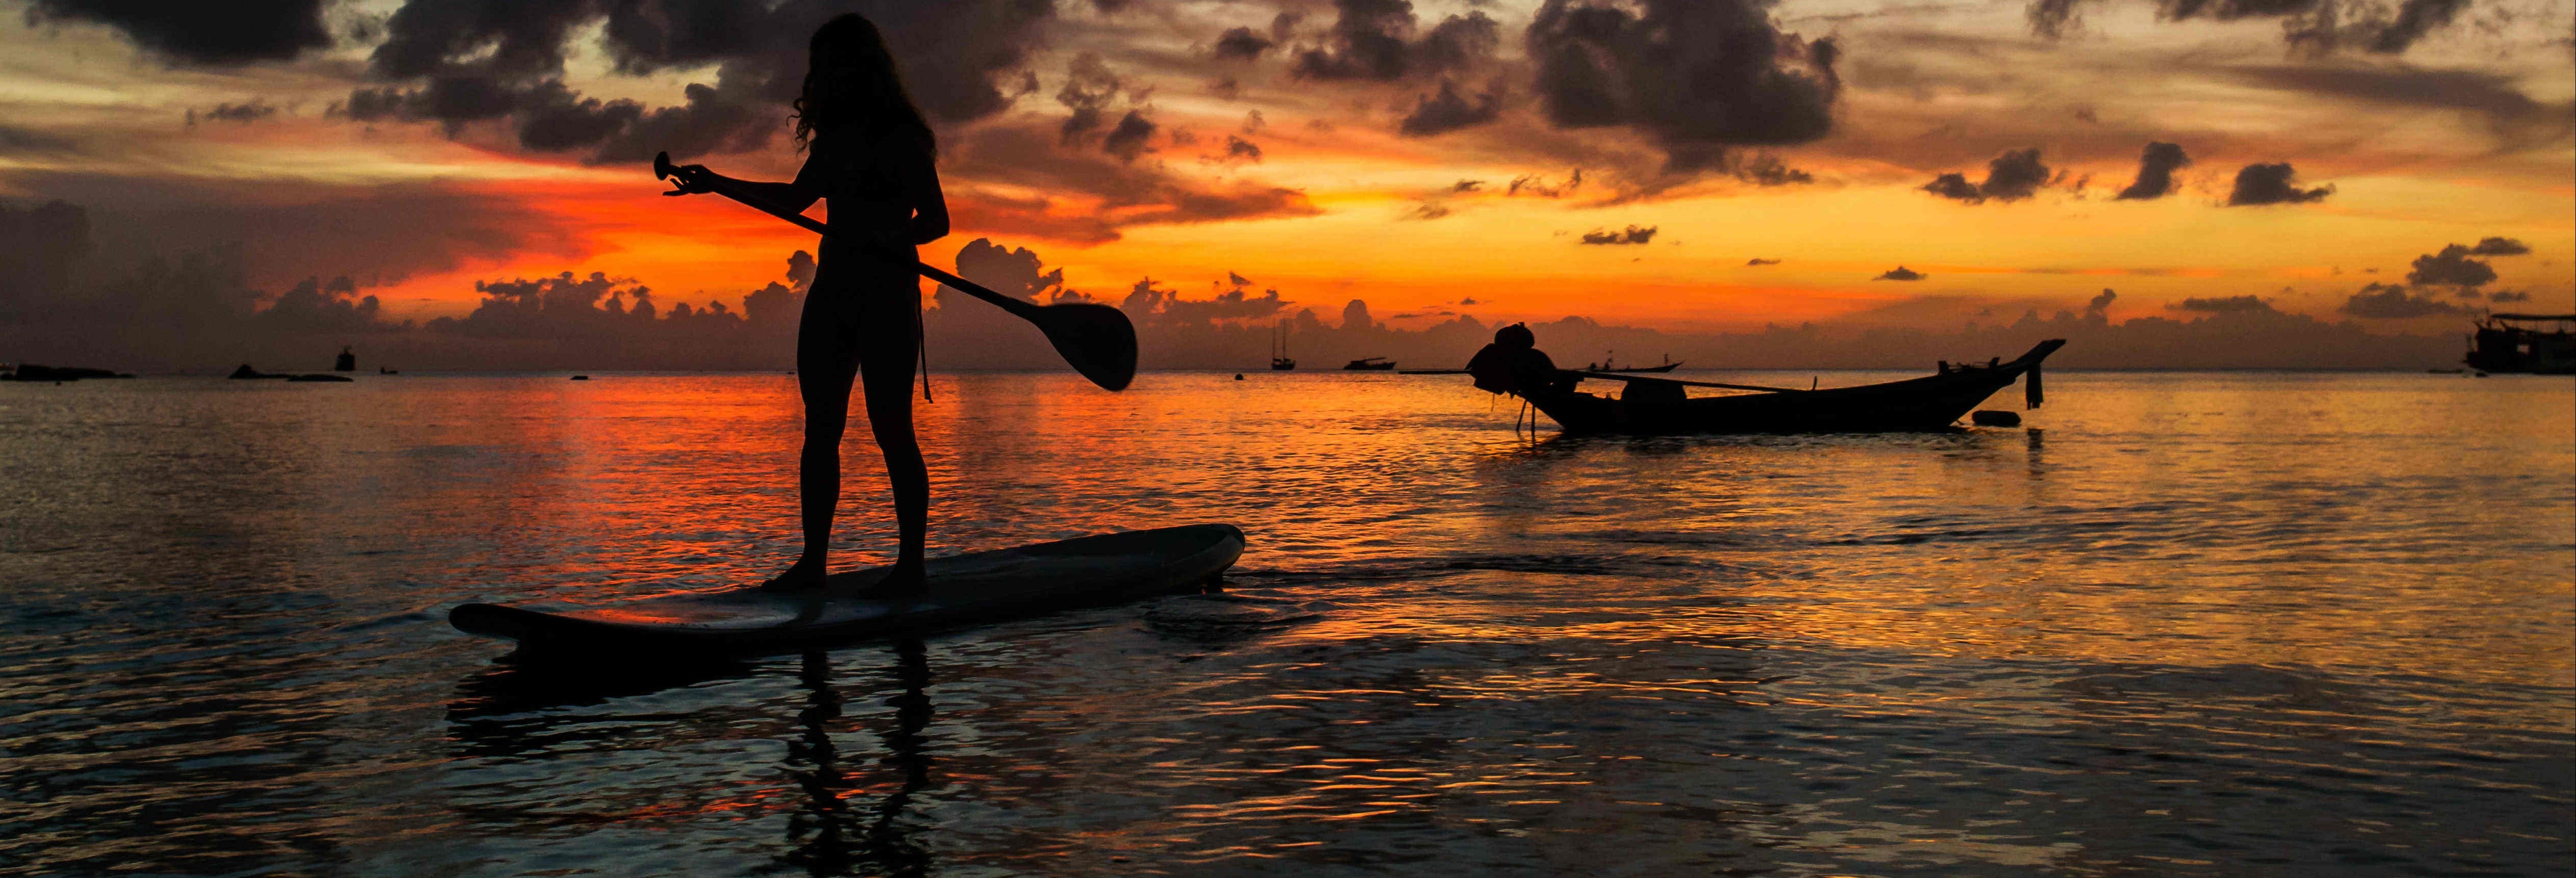 Sunset Paddle Boarding